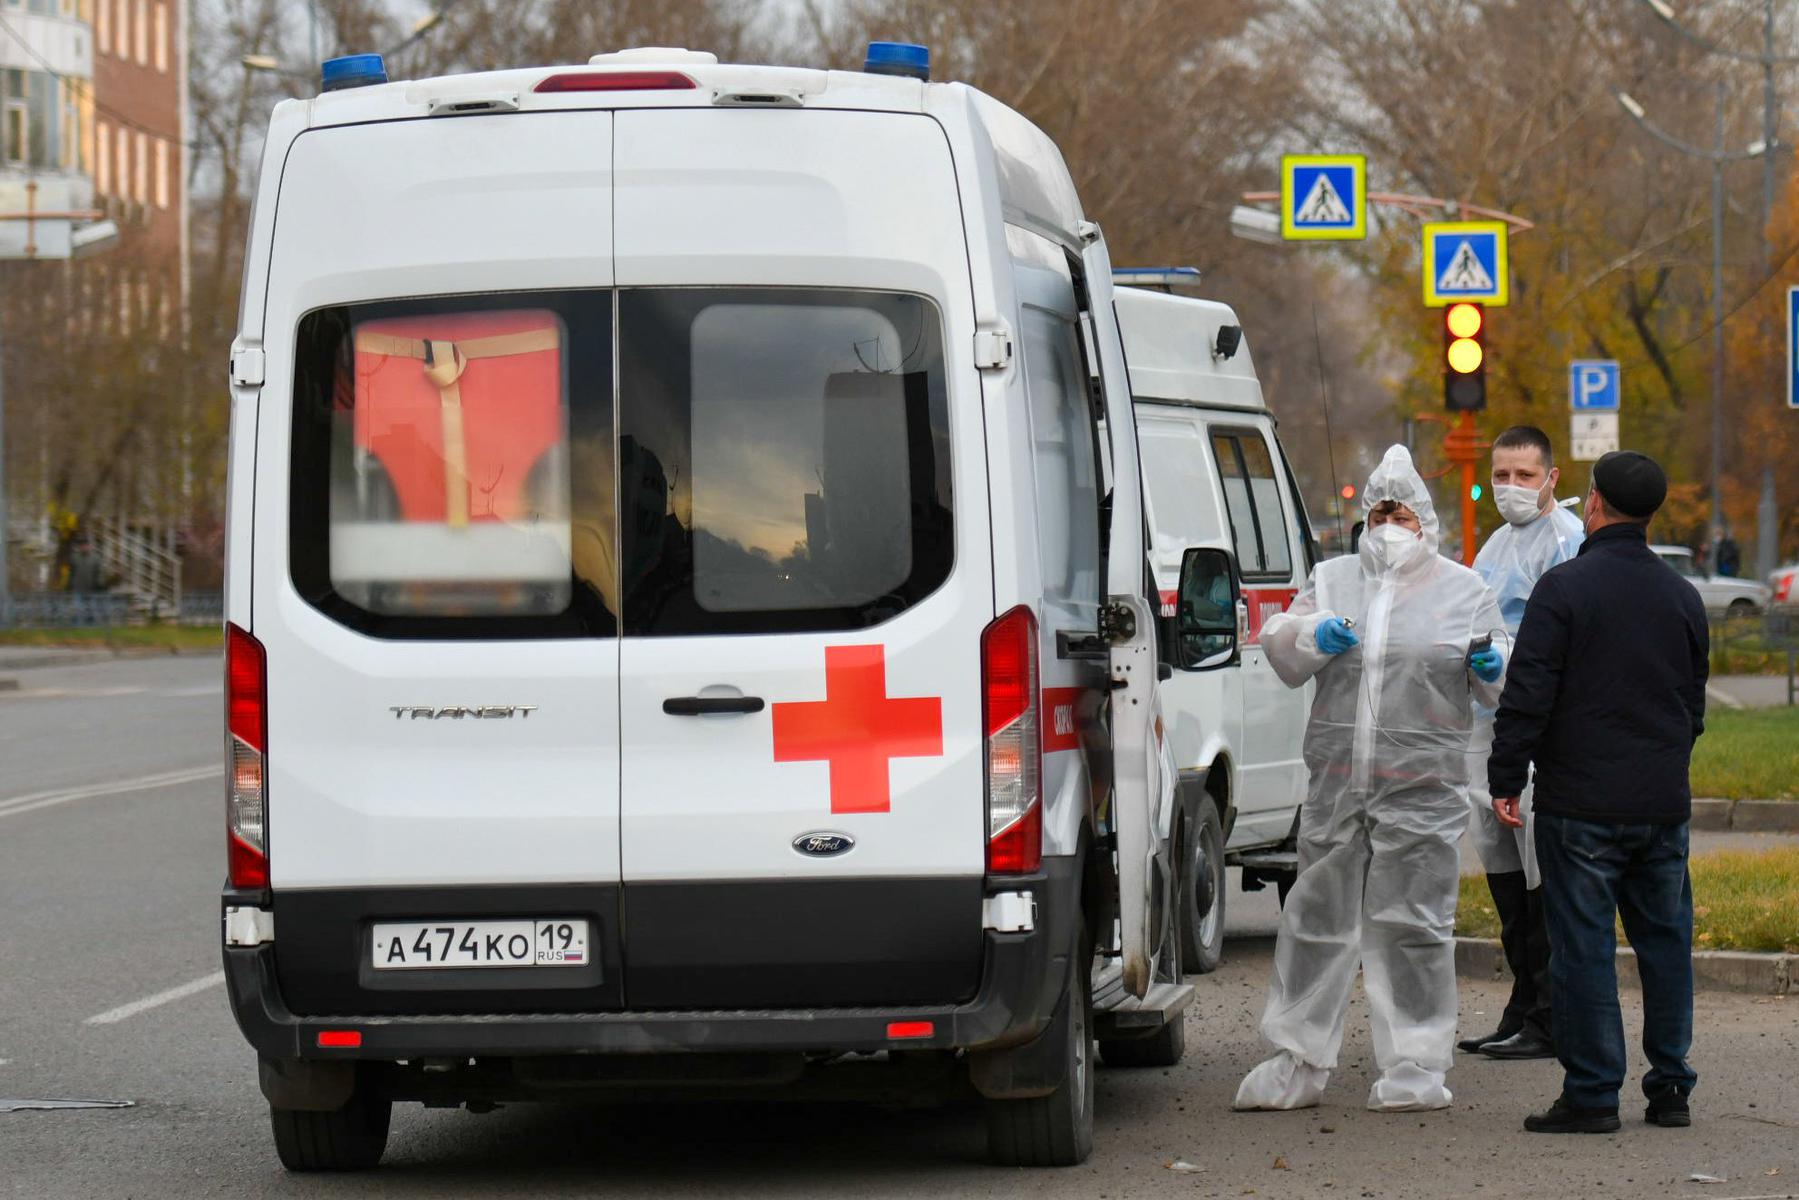 Сотрудники скорой помощи возле автомобиля на территории Центральной городской поликлиники Абакана, Хакасия. Фото: Александр Колбасов / ТАСС